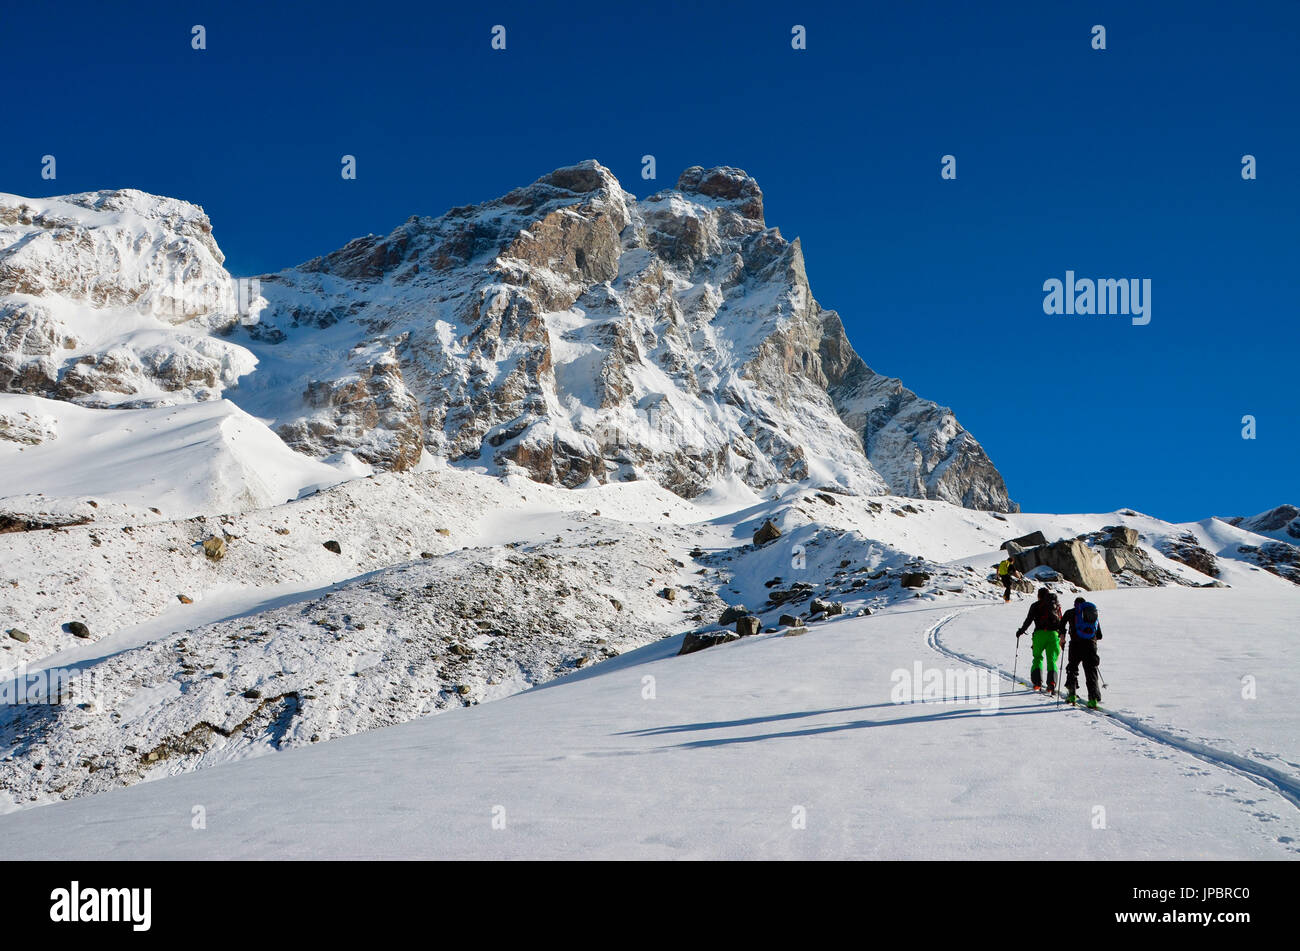 Ski montaineering e Cervino (Matterhorn) in primavera, Cervinia,Valle d'Aosta, Italia Foto Stock